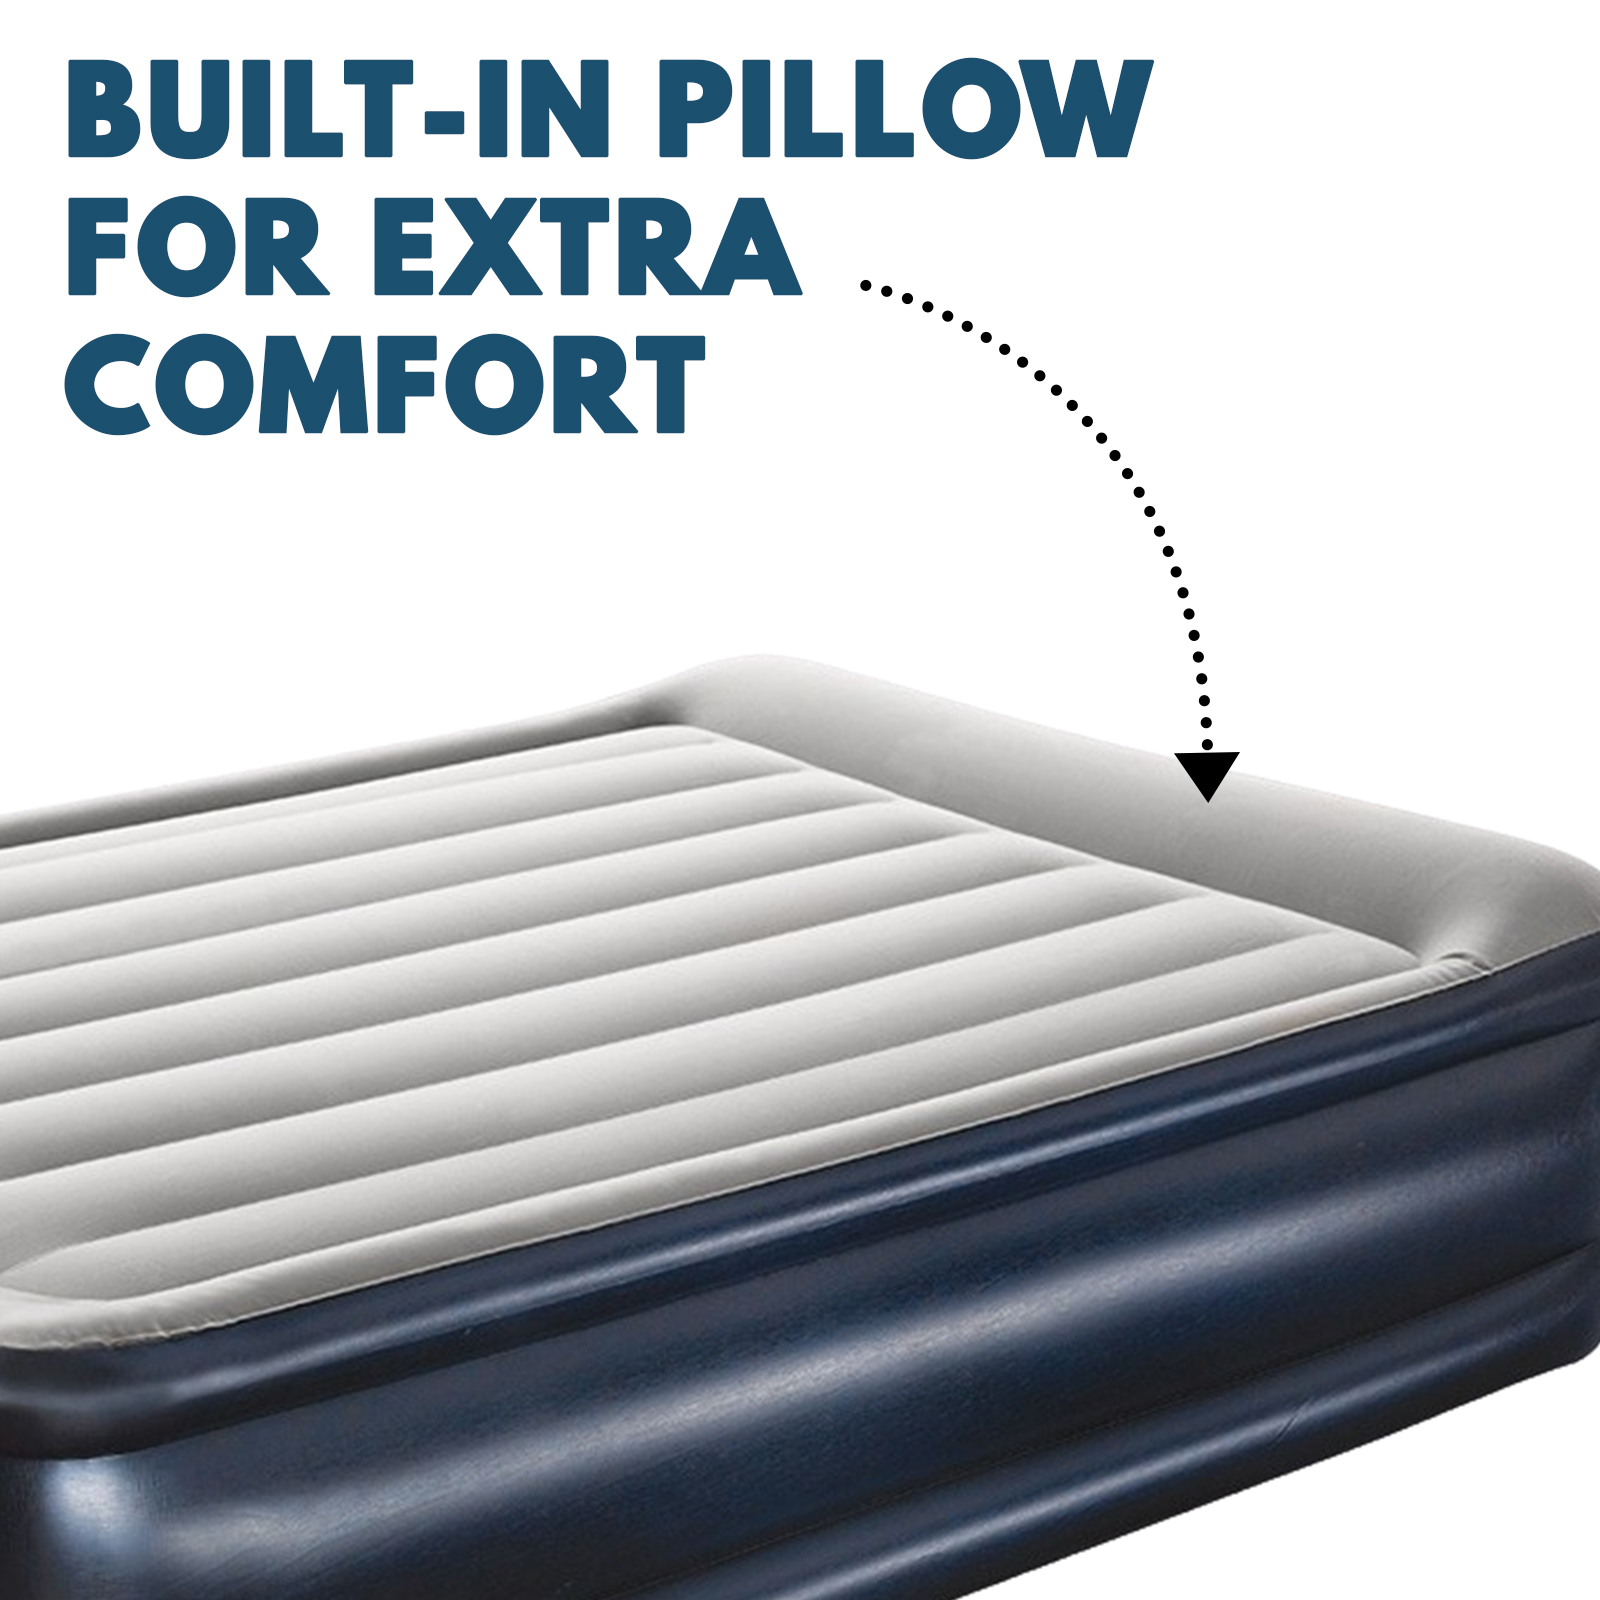 Queen Size Air Bed Inflatable Mattress Built-in Pump Sleeping Mat - Navy